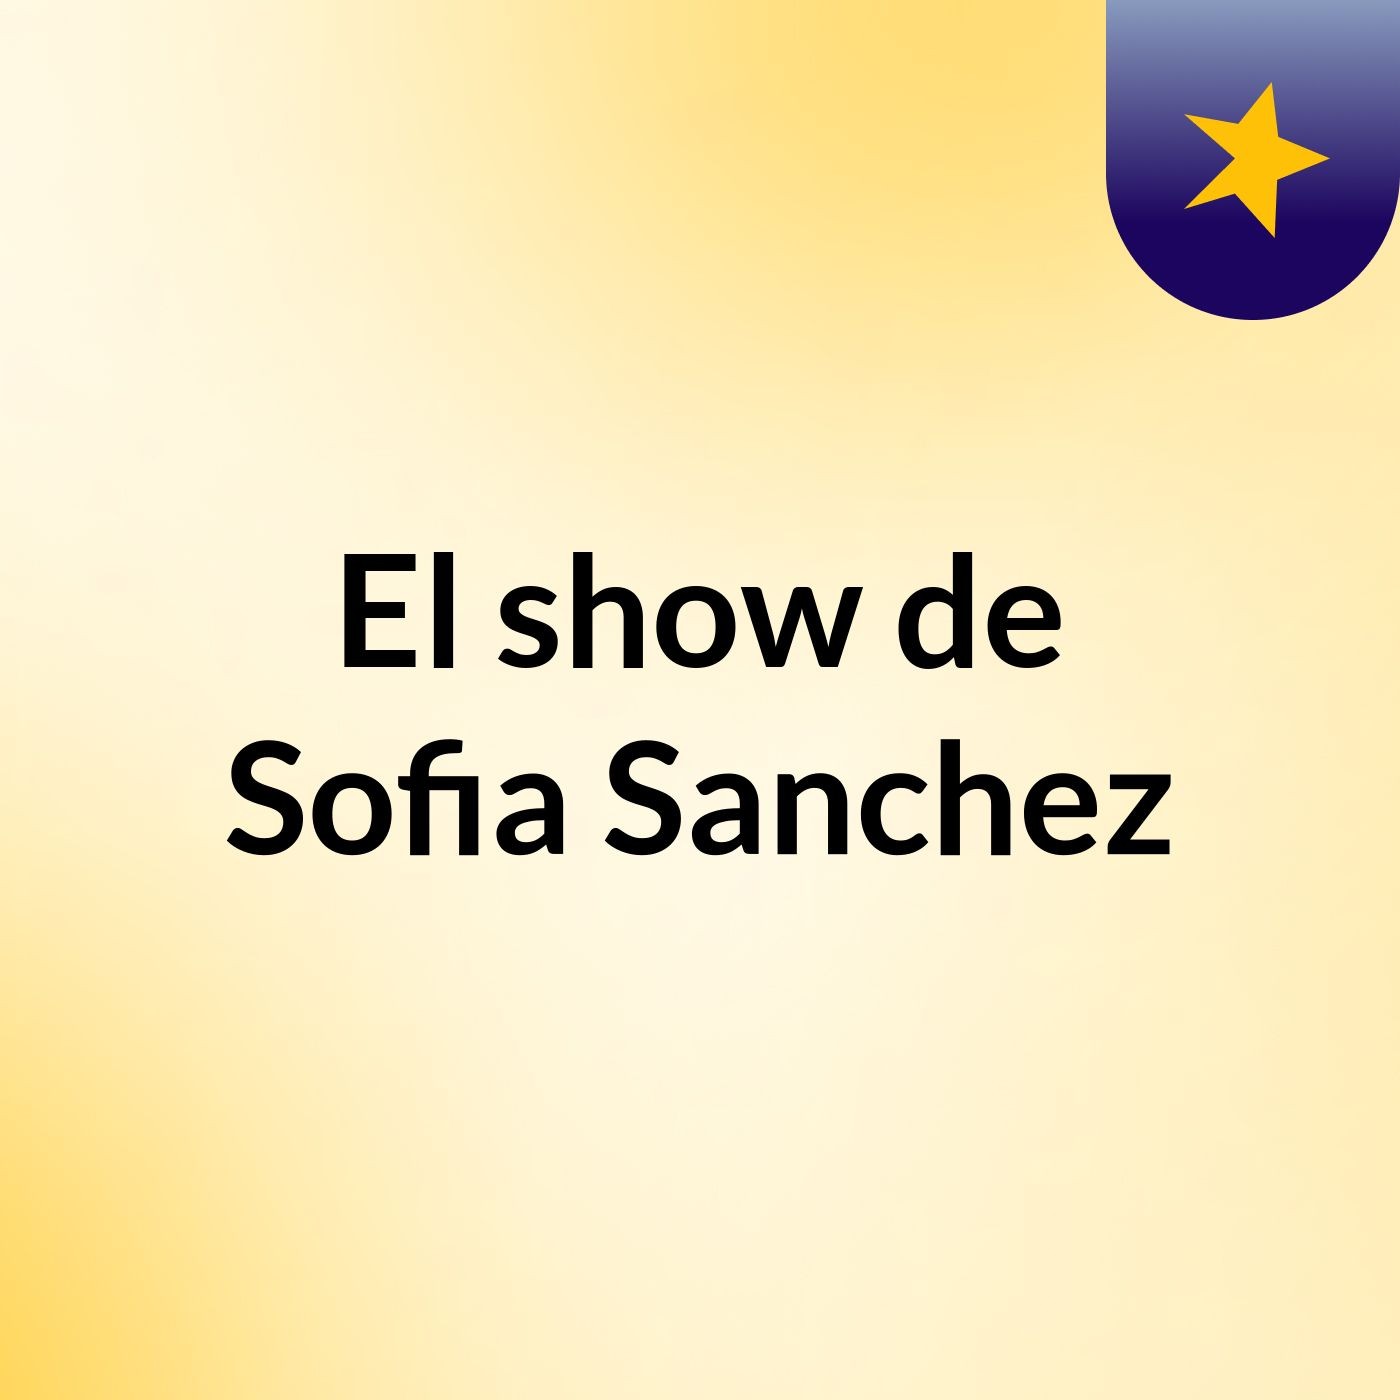 El show de Sofia Sanchez